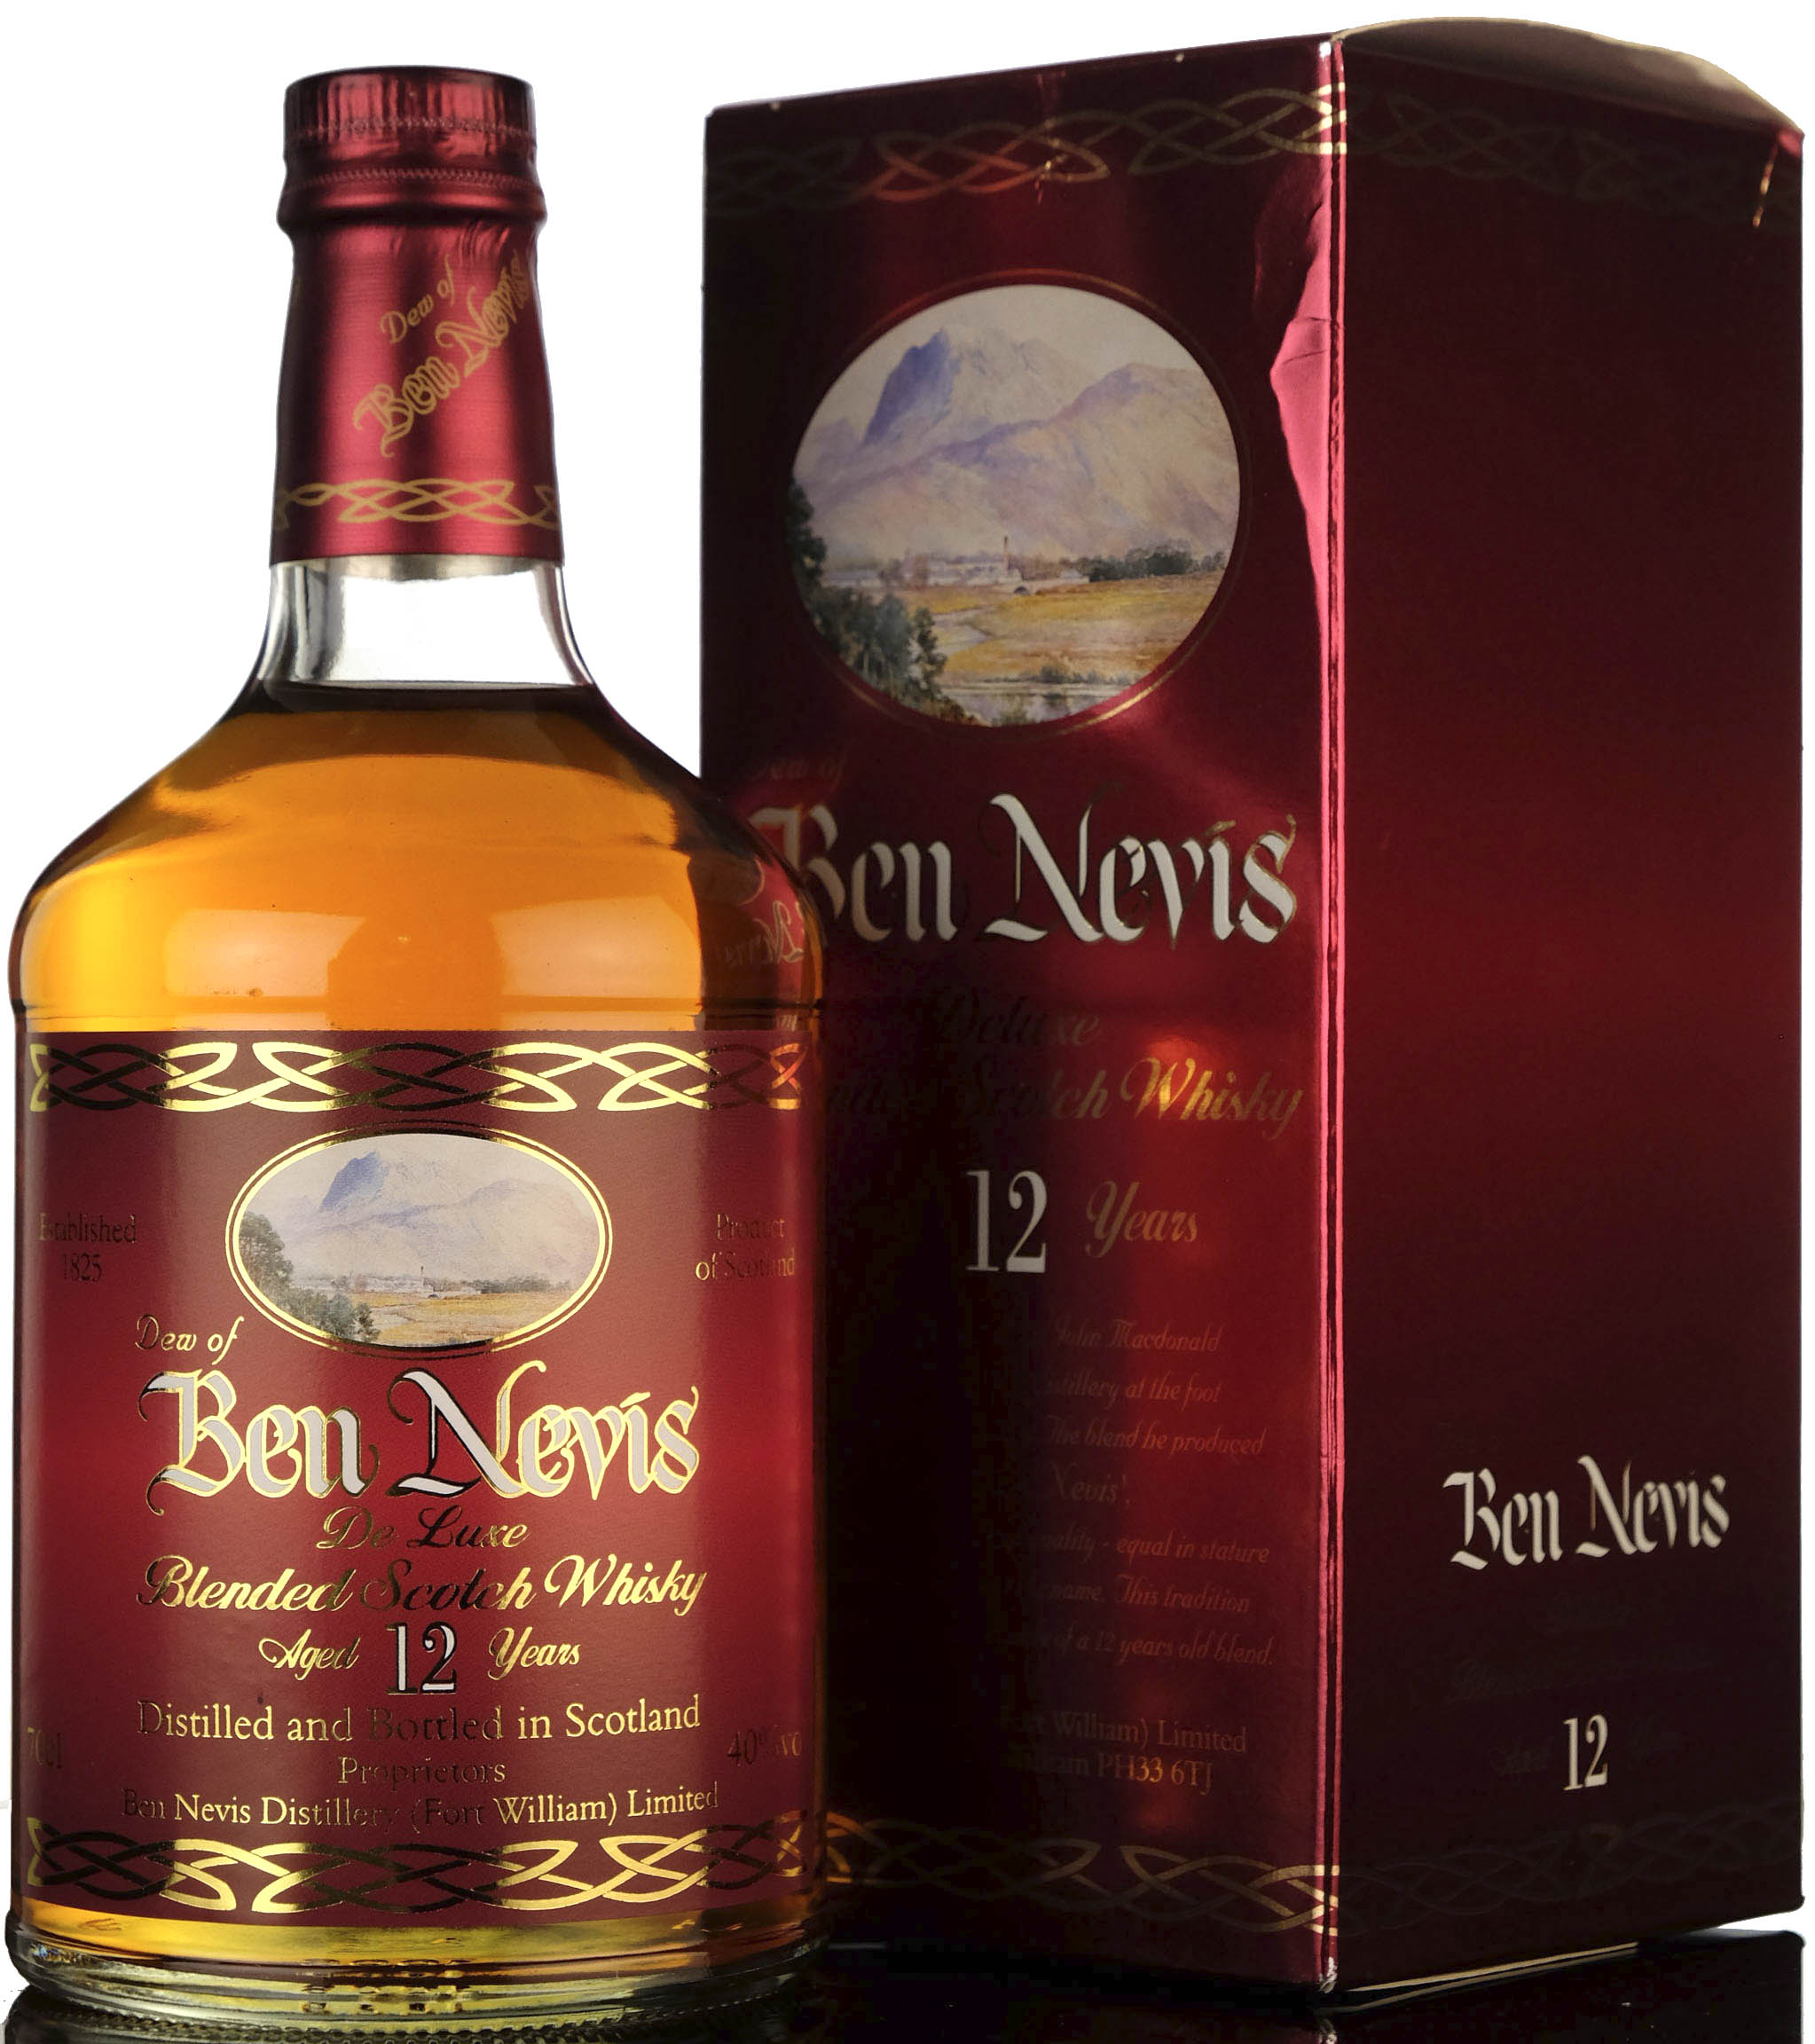 Dew Of Ben Nevis 12 Year Old